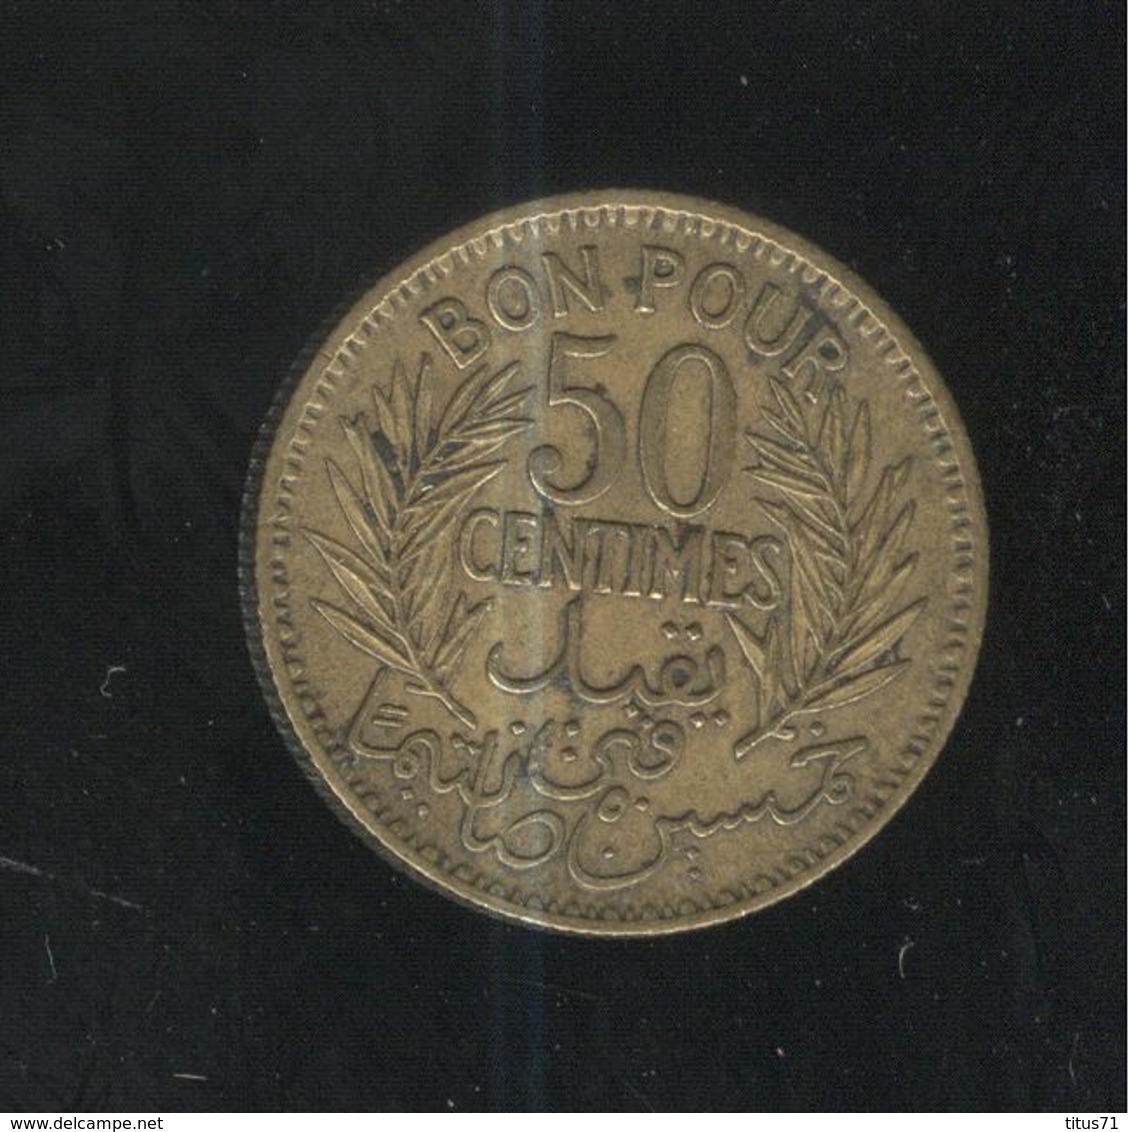 50 Centimes Tunisie 1941 - Tunisia